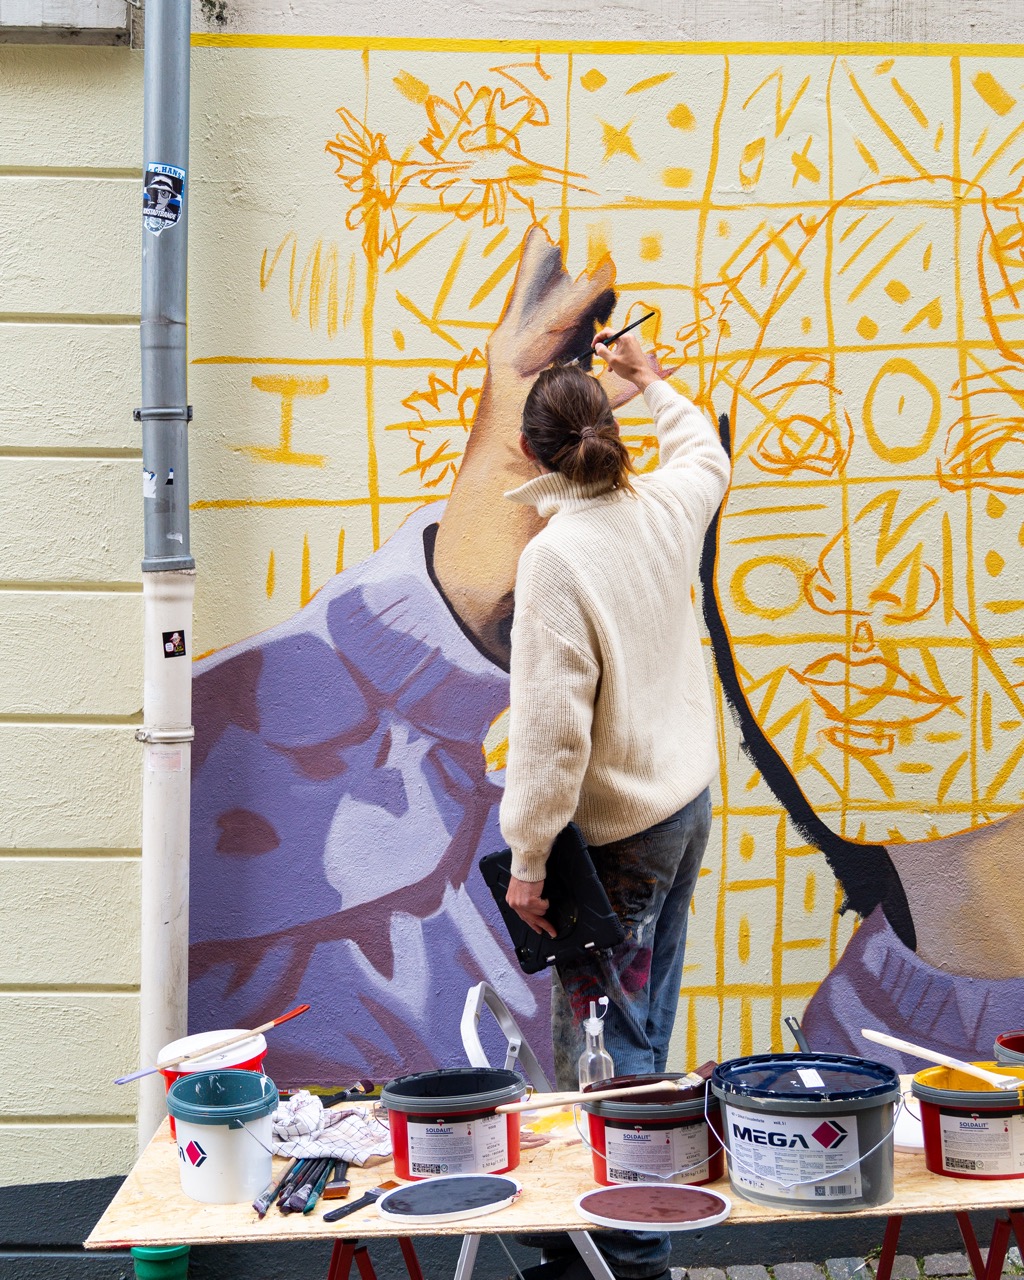 Ein Mann malt mit einem Pinsel ein Gemälde an eine Hauswand. Auf einem Tisch neben ihm stehen mehrere Farbeimer sowie Malutensilien.